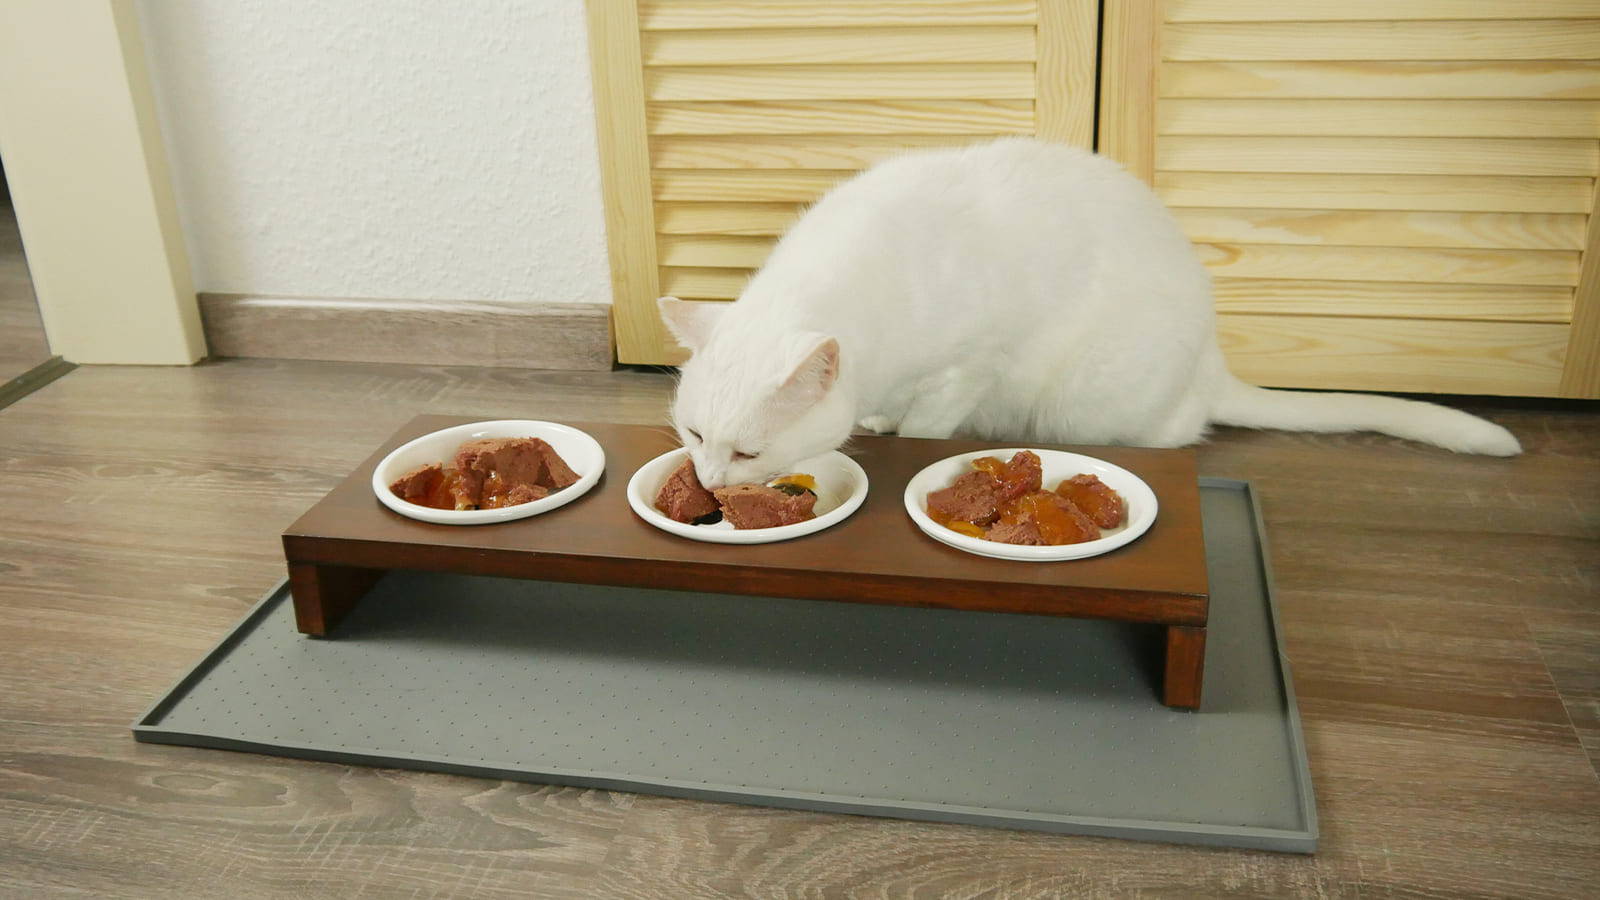 Katze schlingt - All You Can Eat Buffet